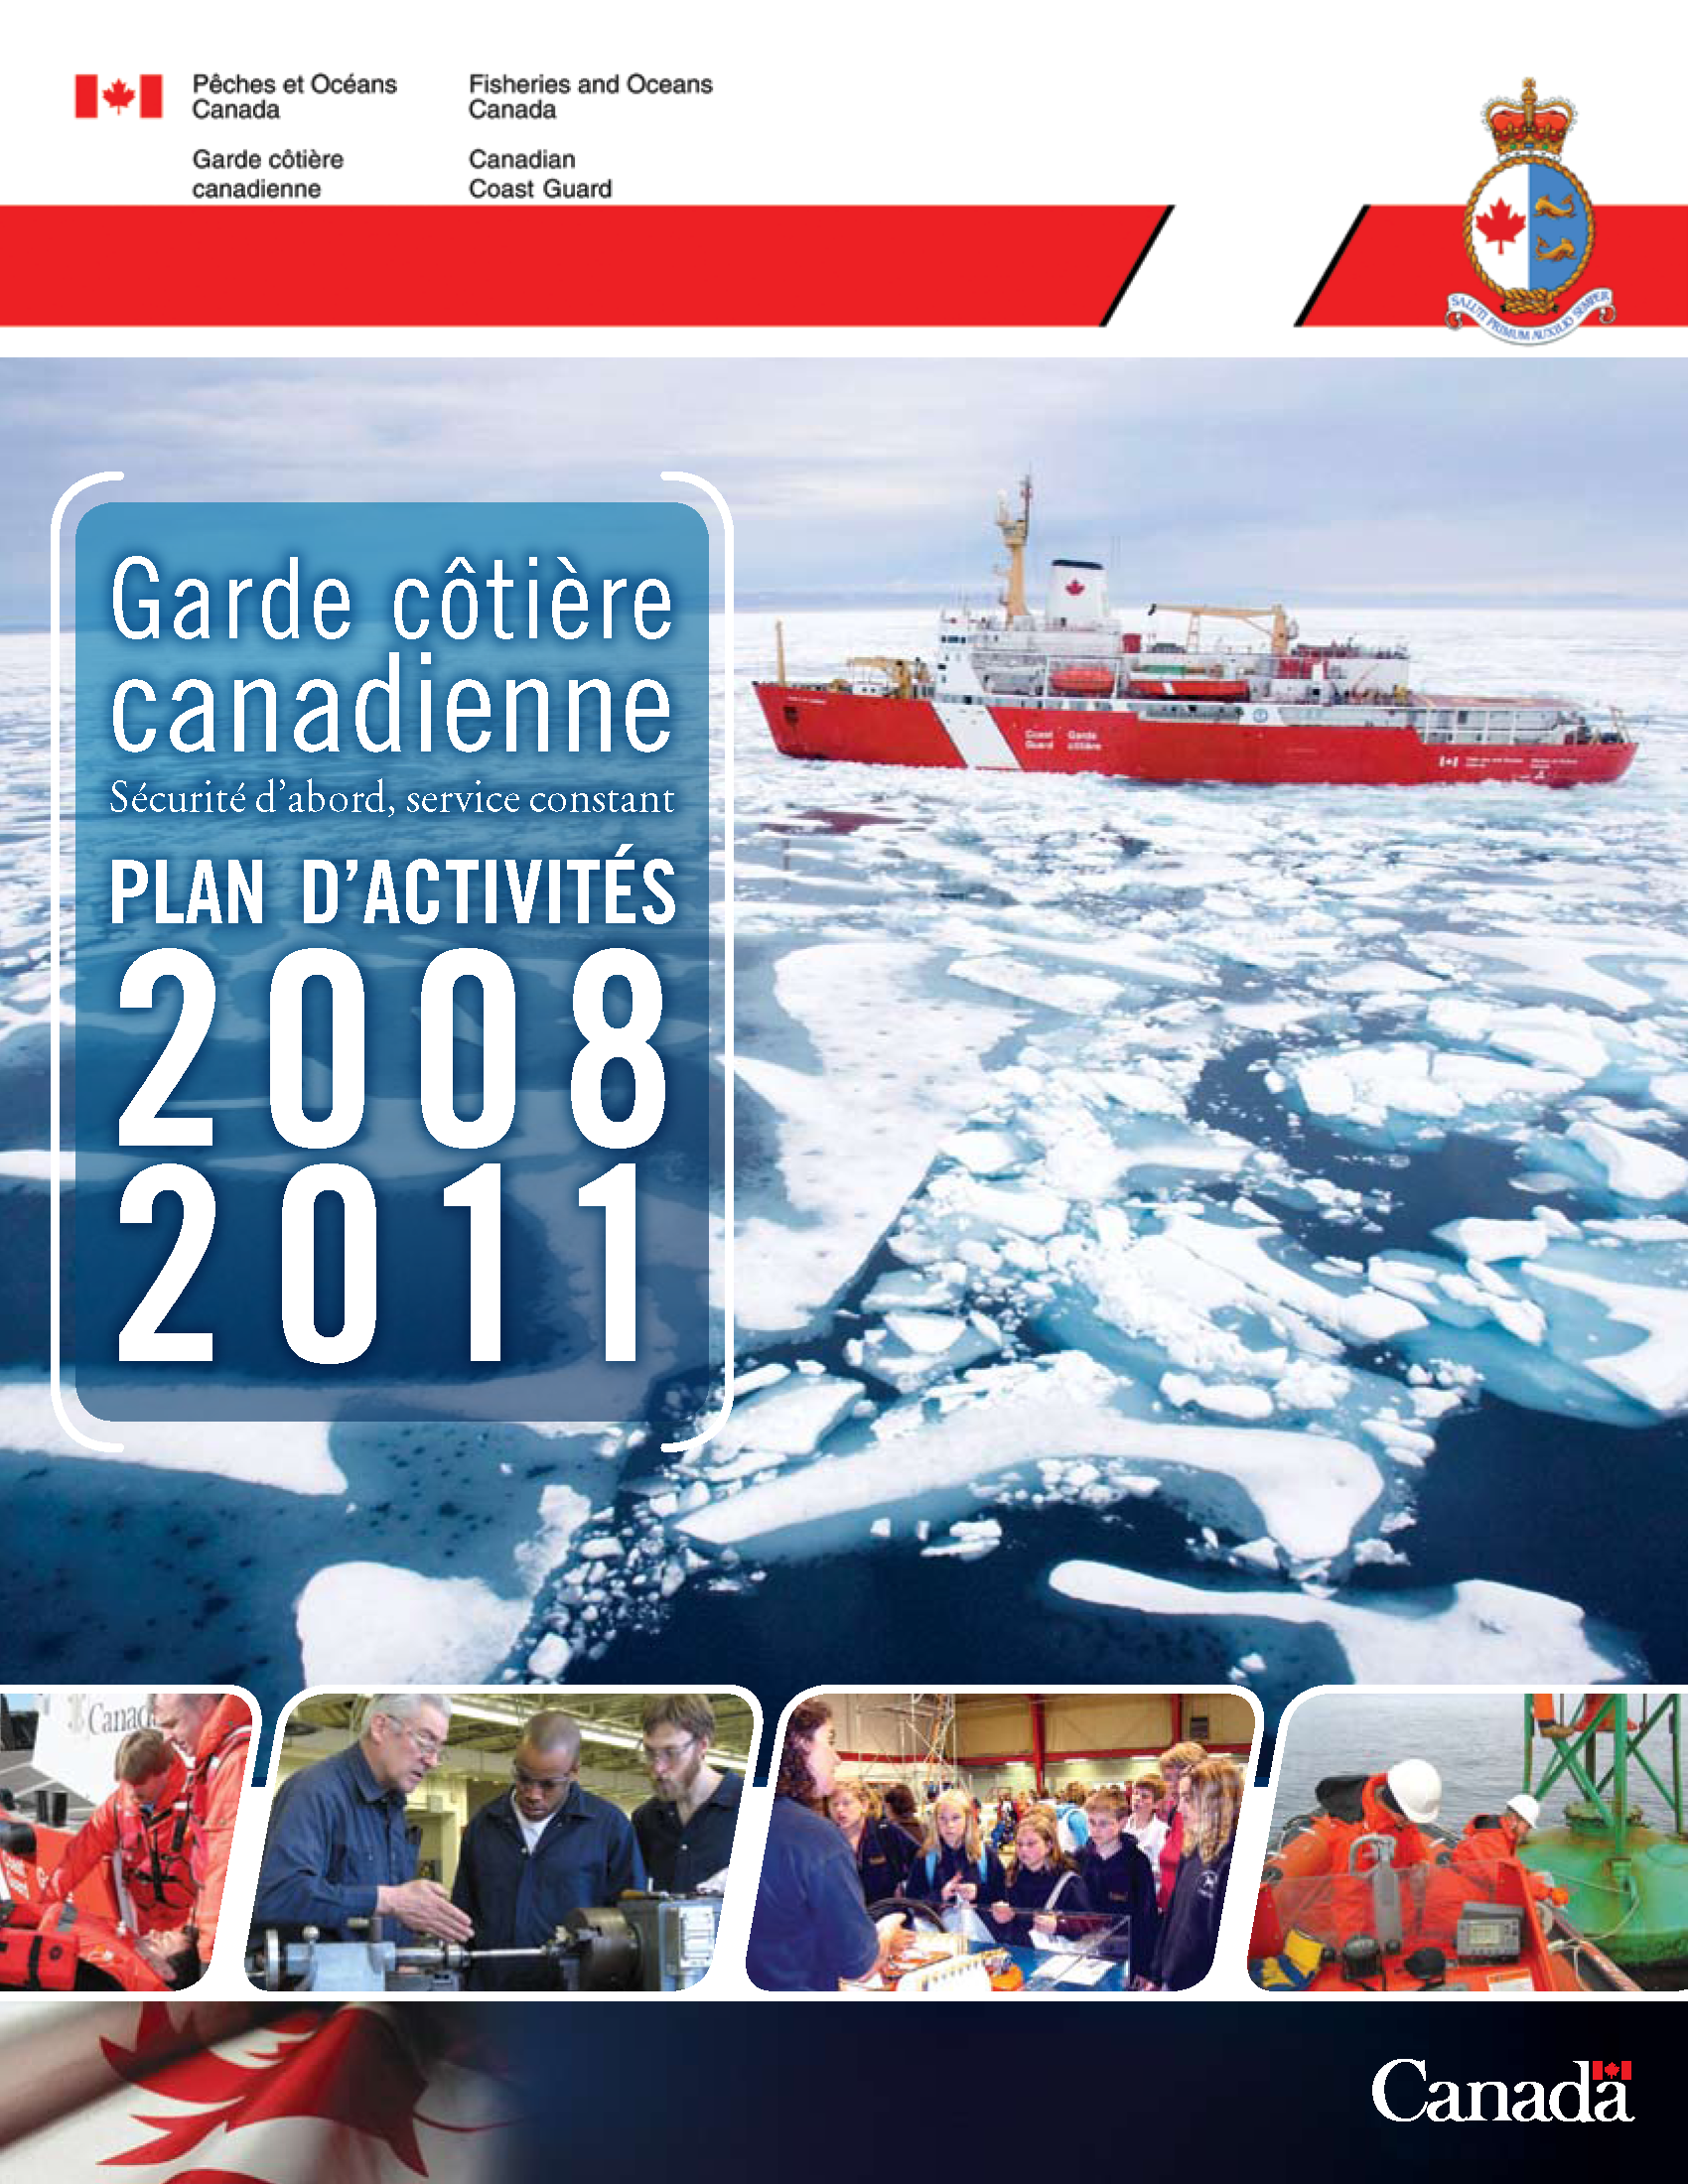  Garde ctire canadienne Plan d'activits de 2008-2011